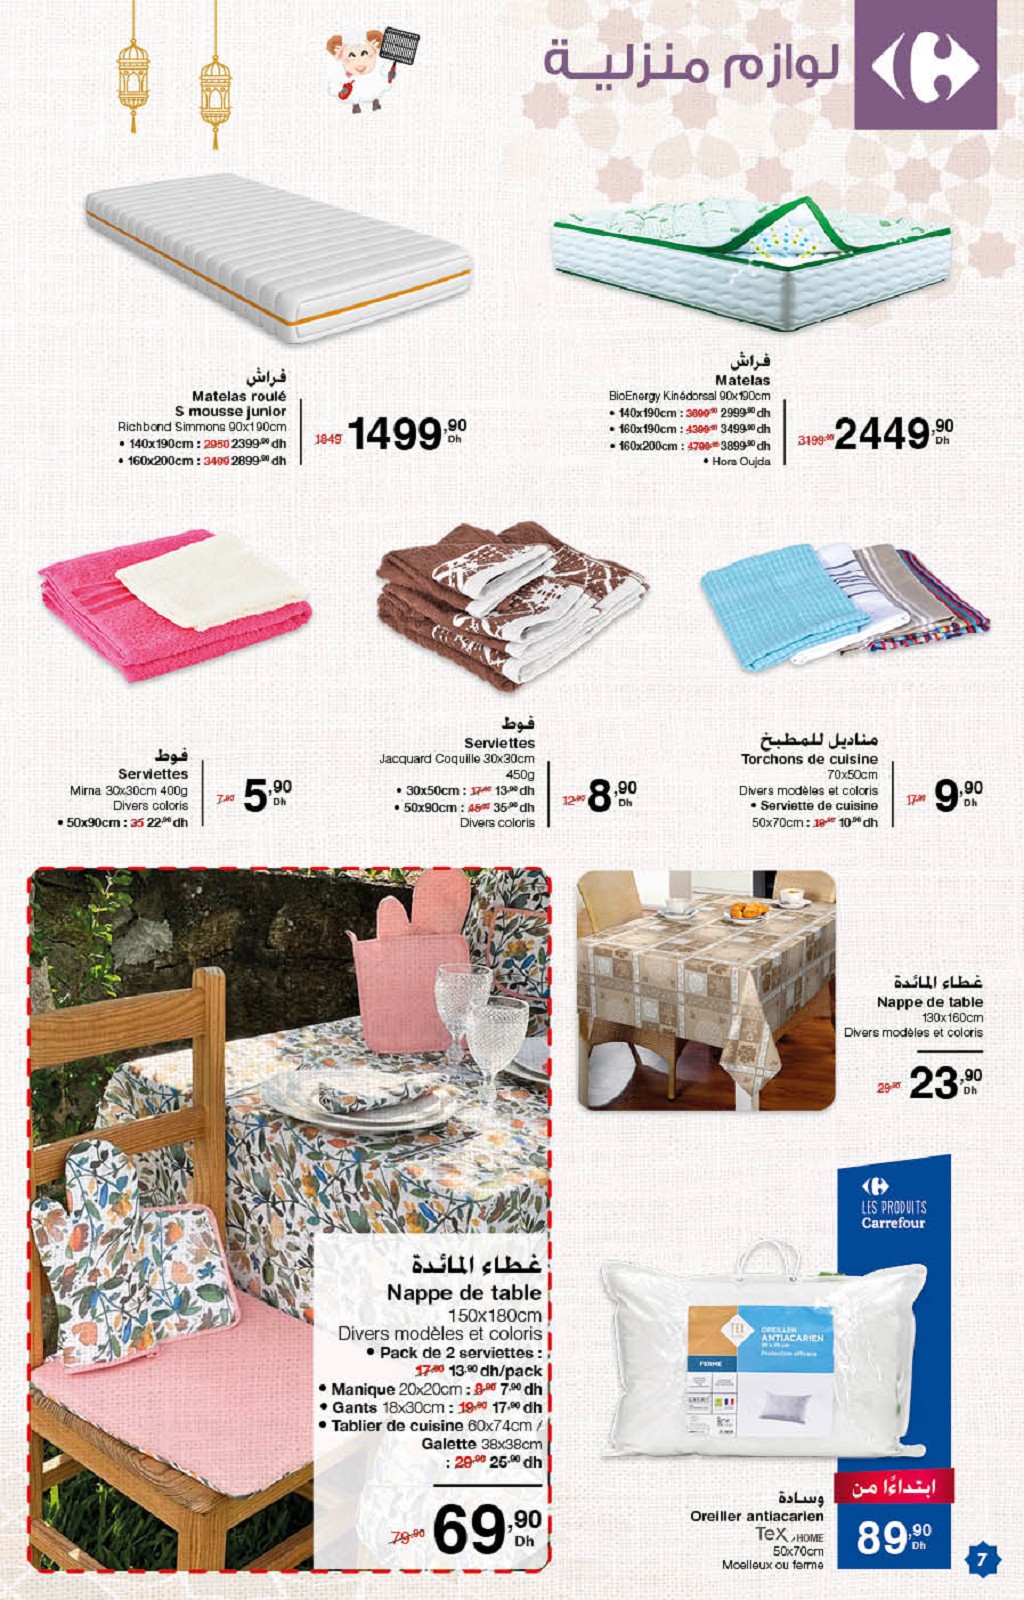 7-Nouveautés Carrefour Catalogue Août 2021